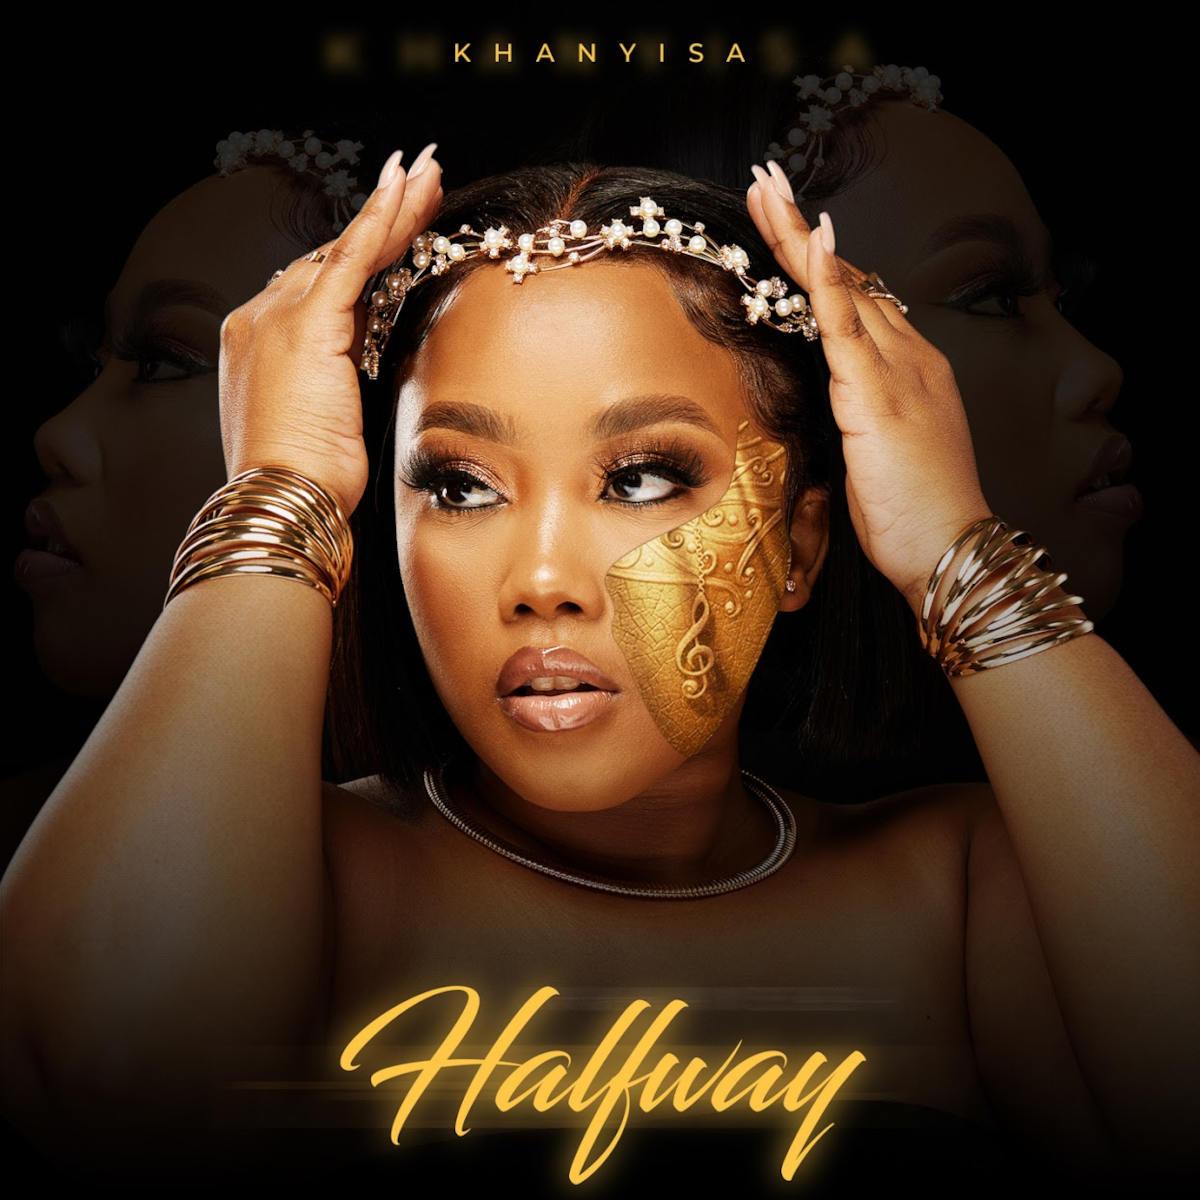 Khanyisa - Halfway EP